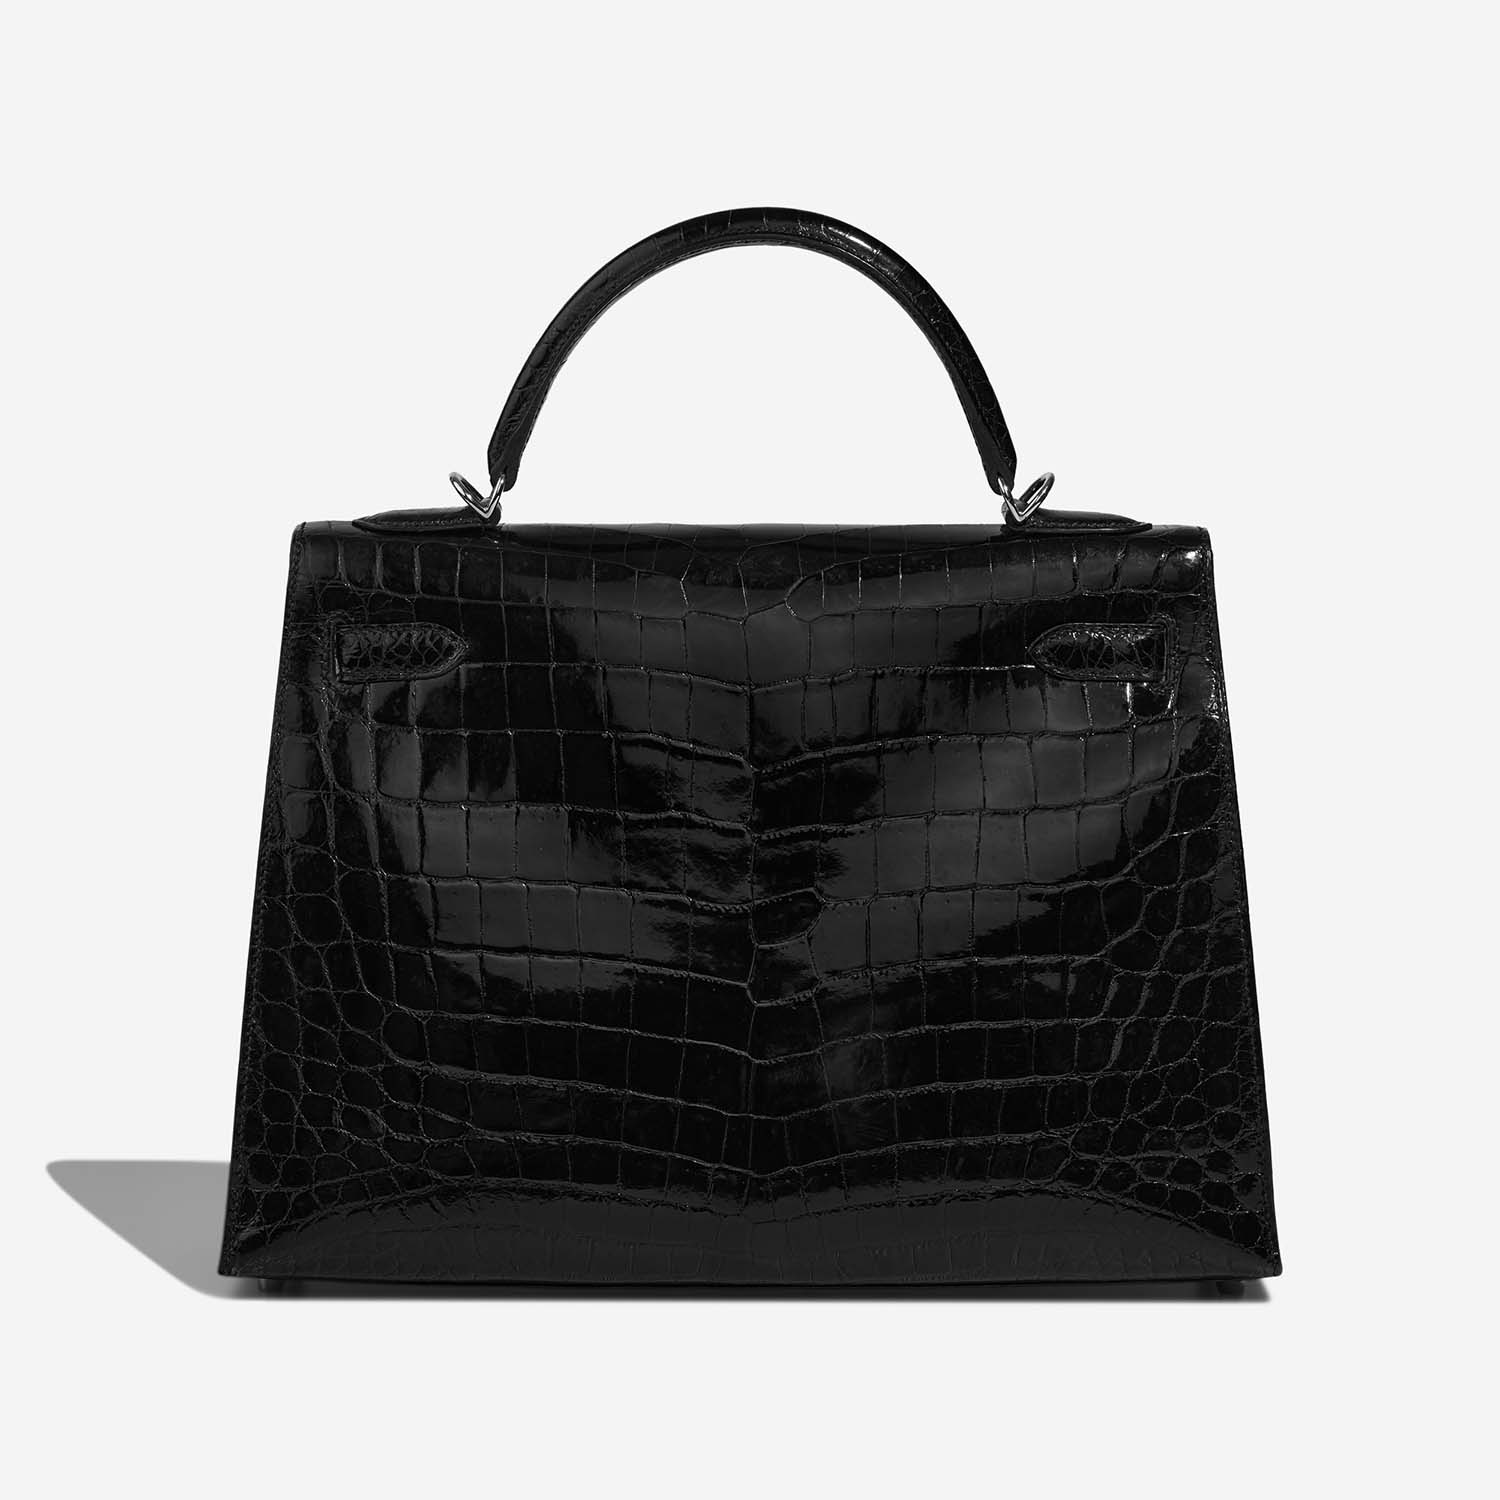 Hermès Kelly 32 Black Back | Verkaufen Sie Ihre Designertasche auf Saclab.com